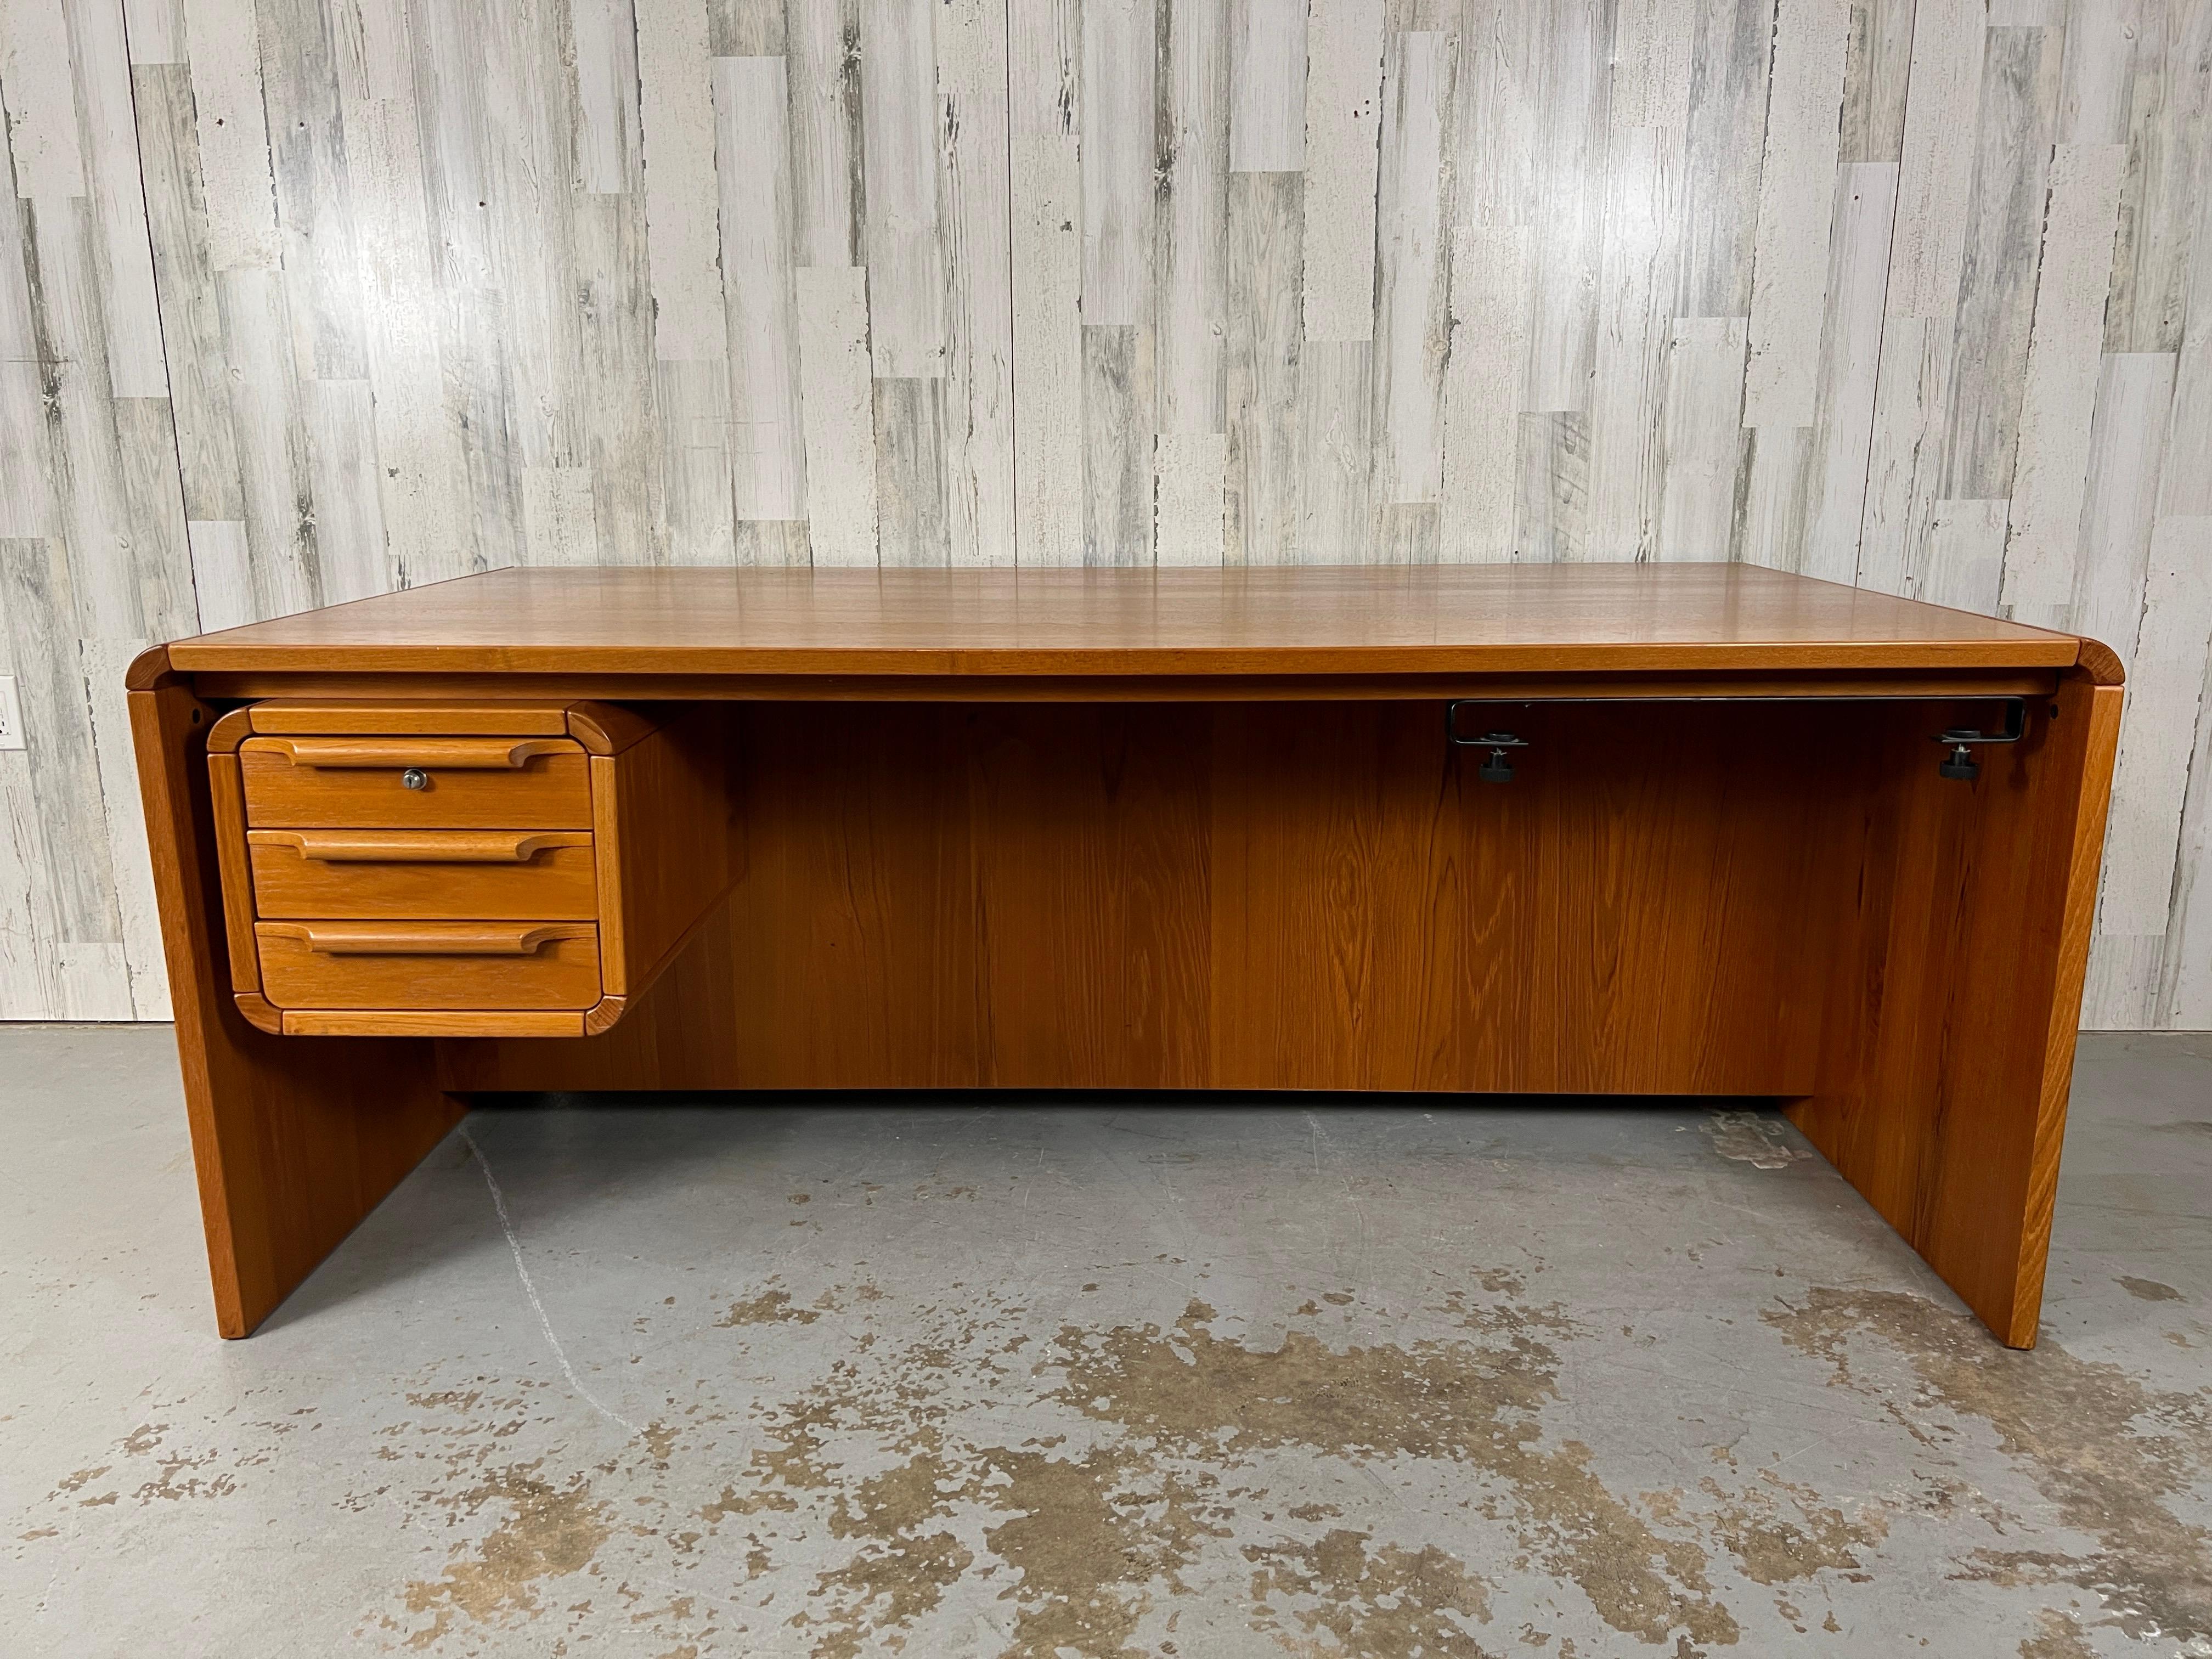 Danish Modern Teak Executive Desk & Return. Sculpted drawer pulls & finished back.
Return Measures: 20.88 L X 53 D X 26 H